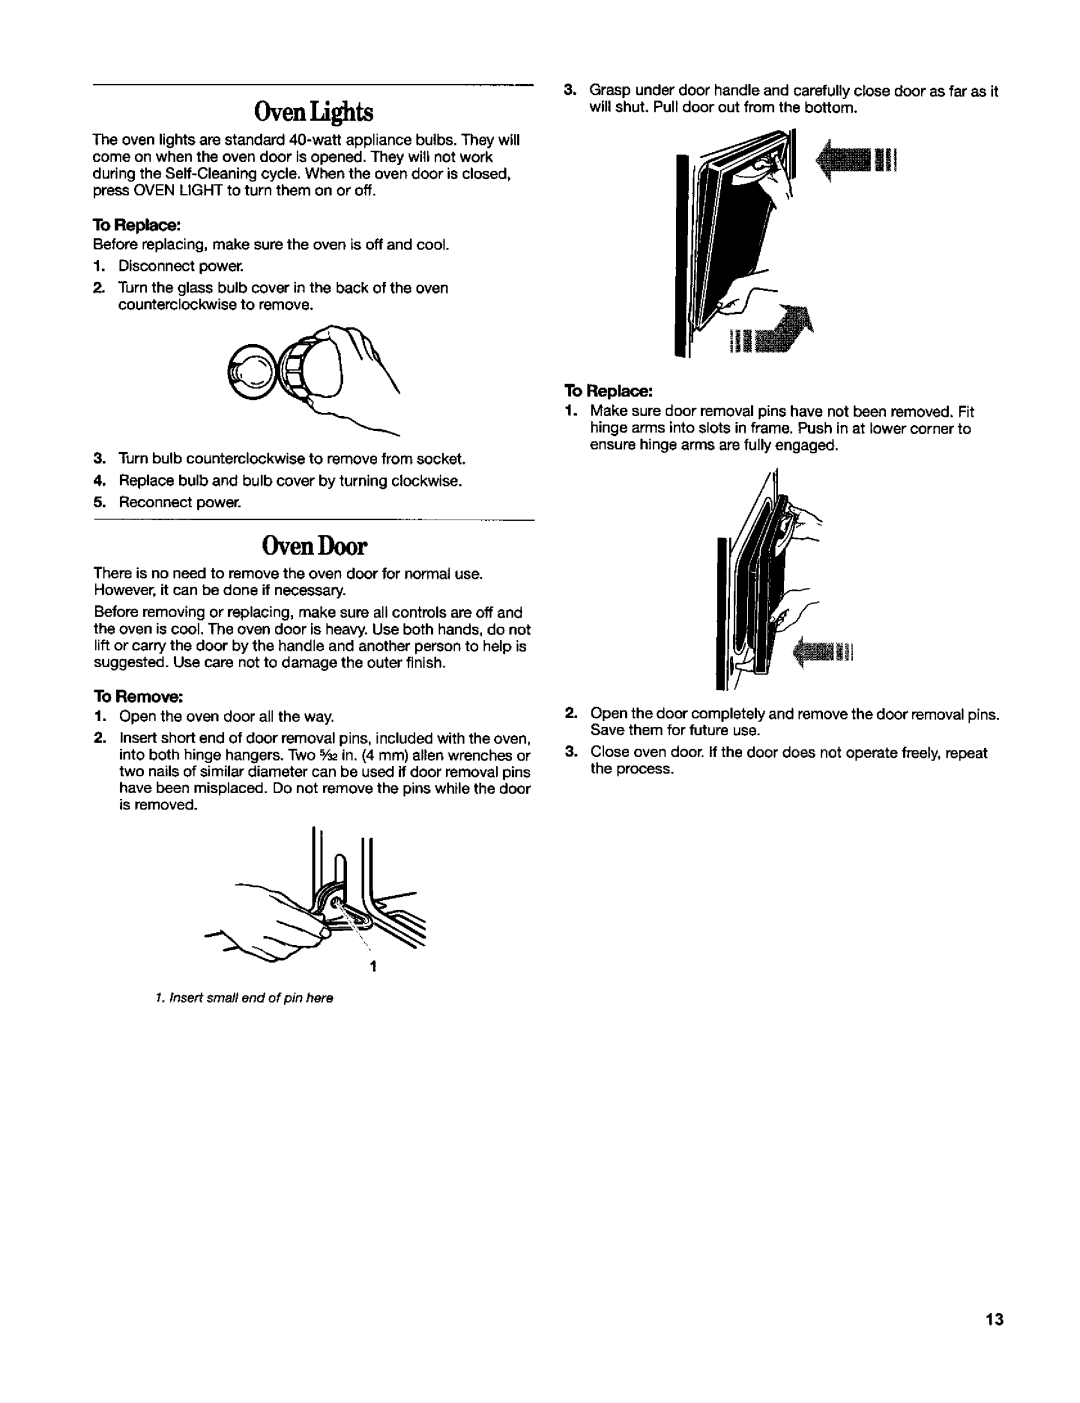 Whirlpool RBD306 manual OvenLights, Oven Door 